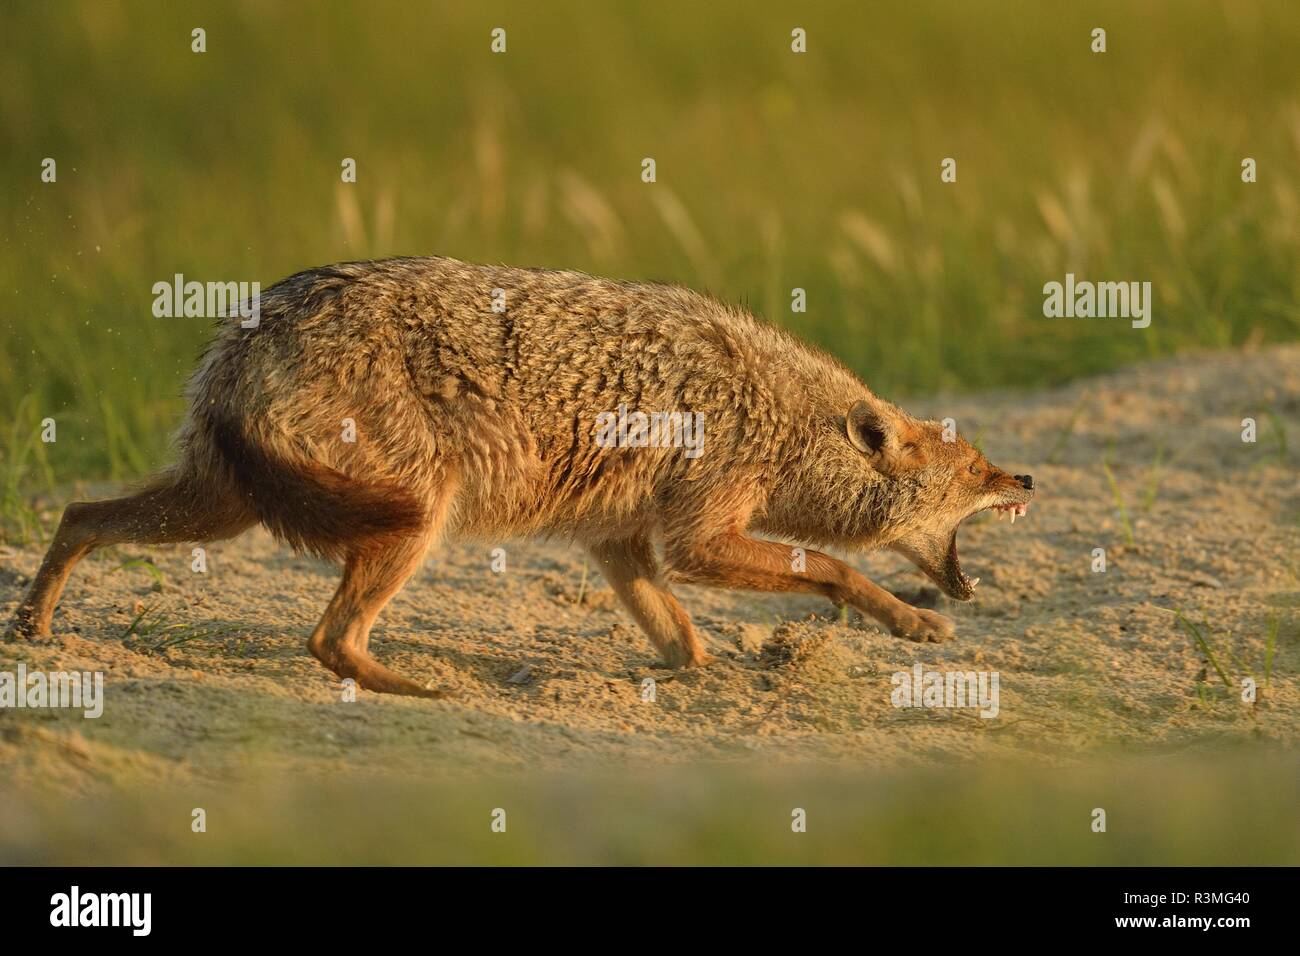 European jackal (Canis aureus moreoticus), Danube Delta, Romania Stock Photo